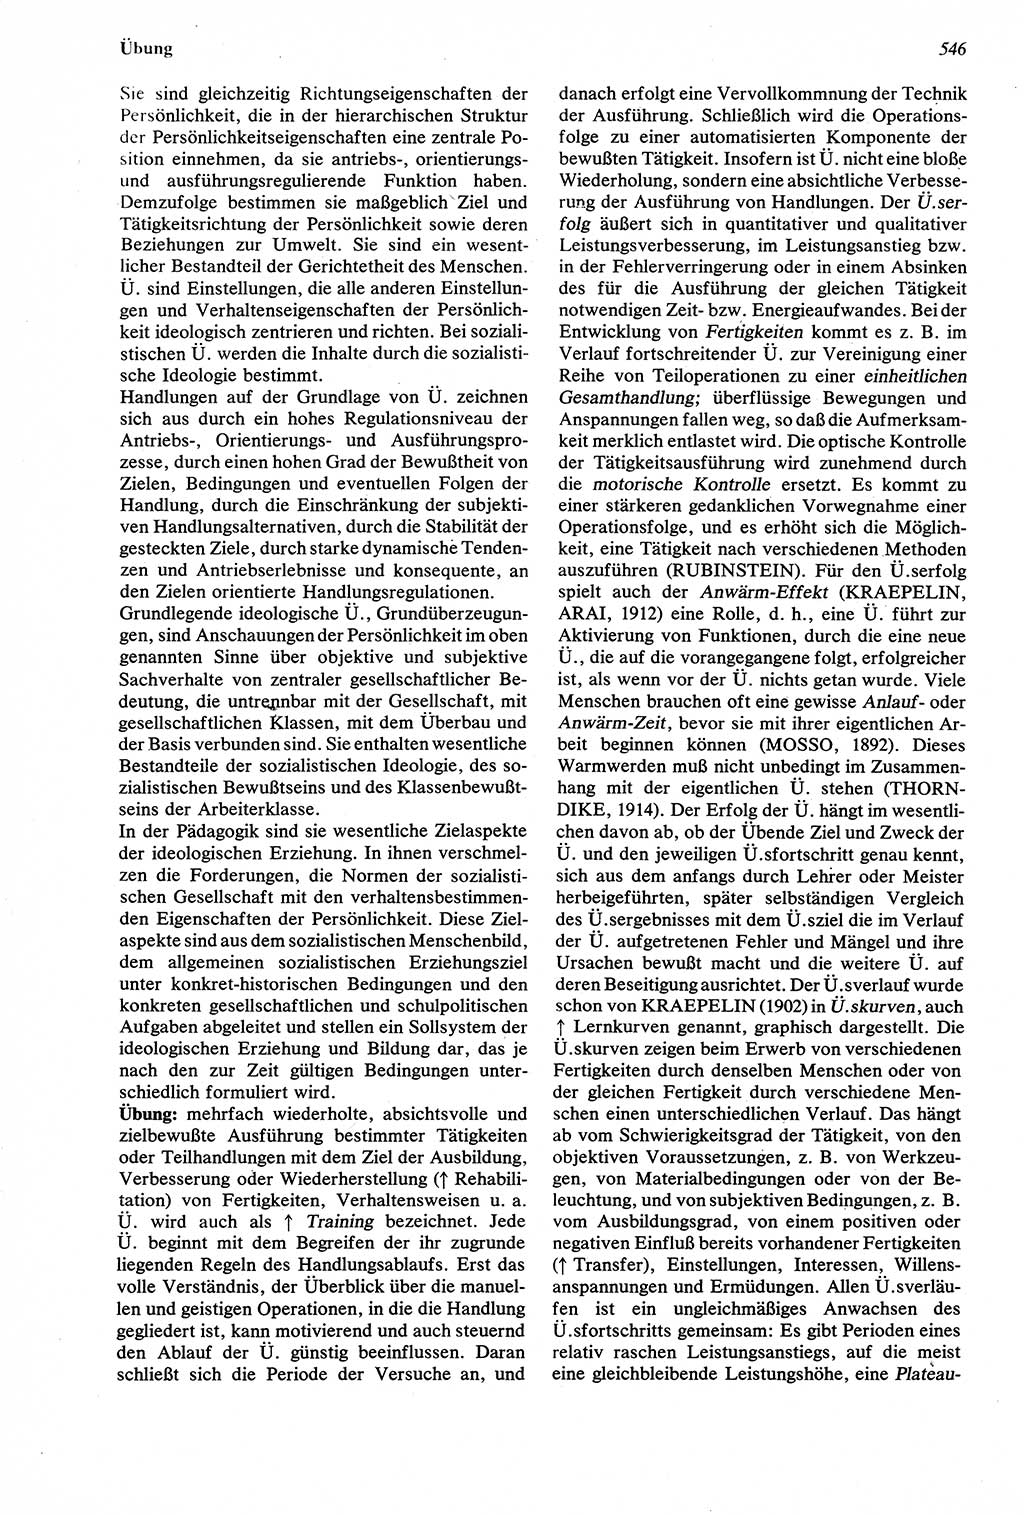 Wörterbuch der Psychologie [Deutsche Demokratische Republik (DDR)] 1976, Seite 546 (Wb. Psych. DDR 1976, S. 546)